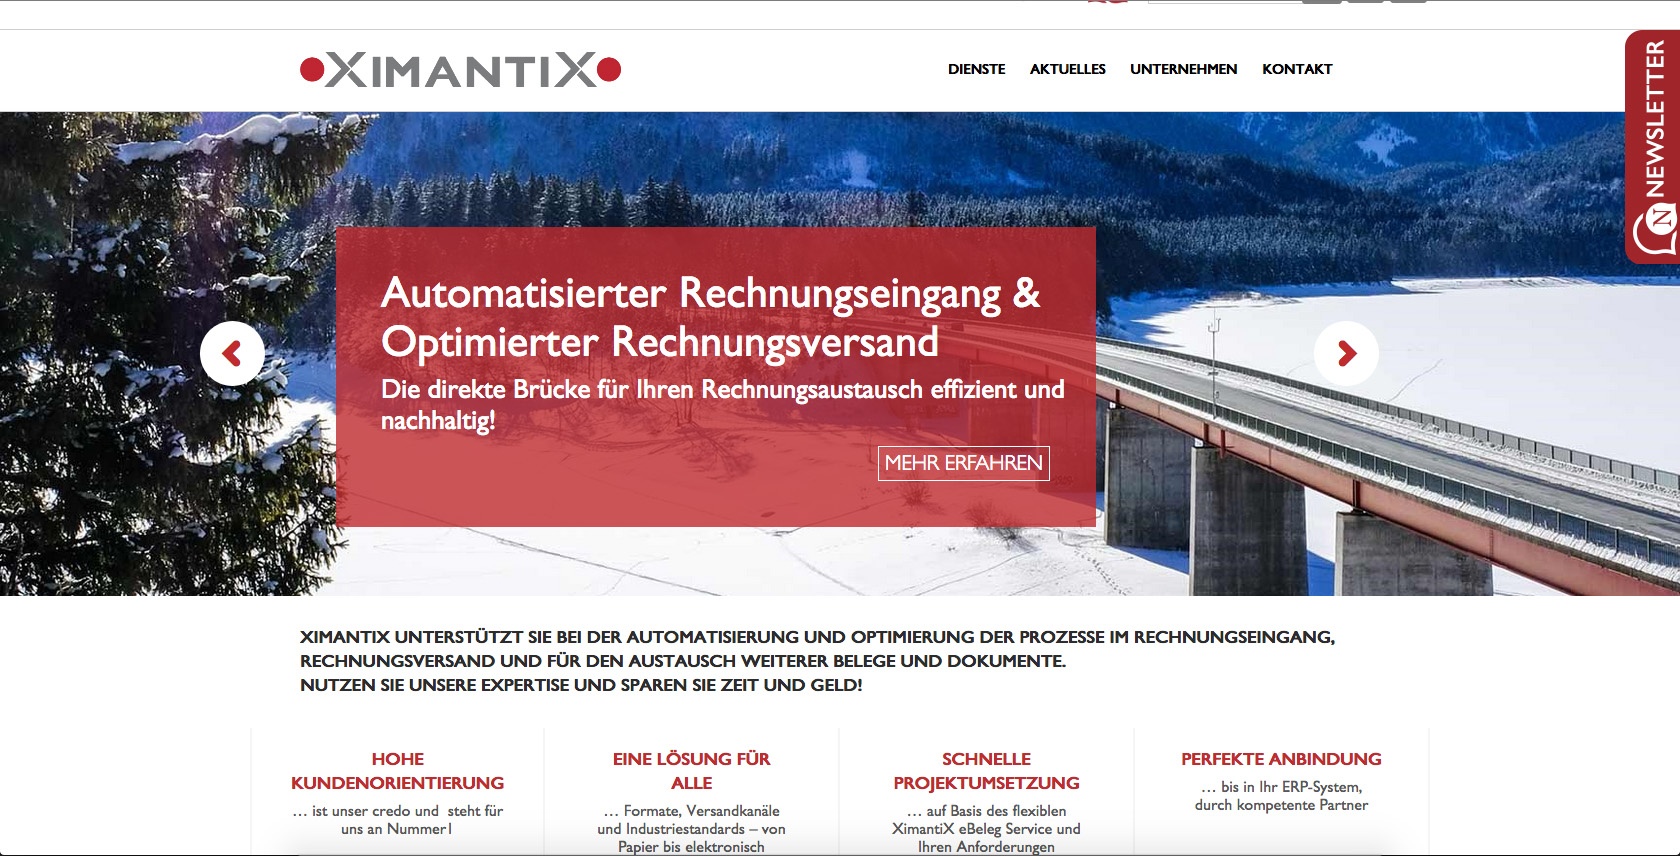 dh+ wird Kooperationspartner der Ximantix Software GmbH